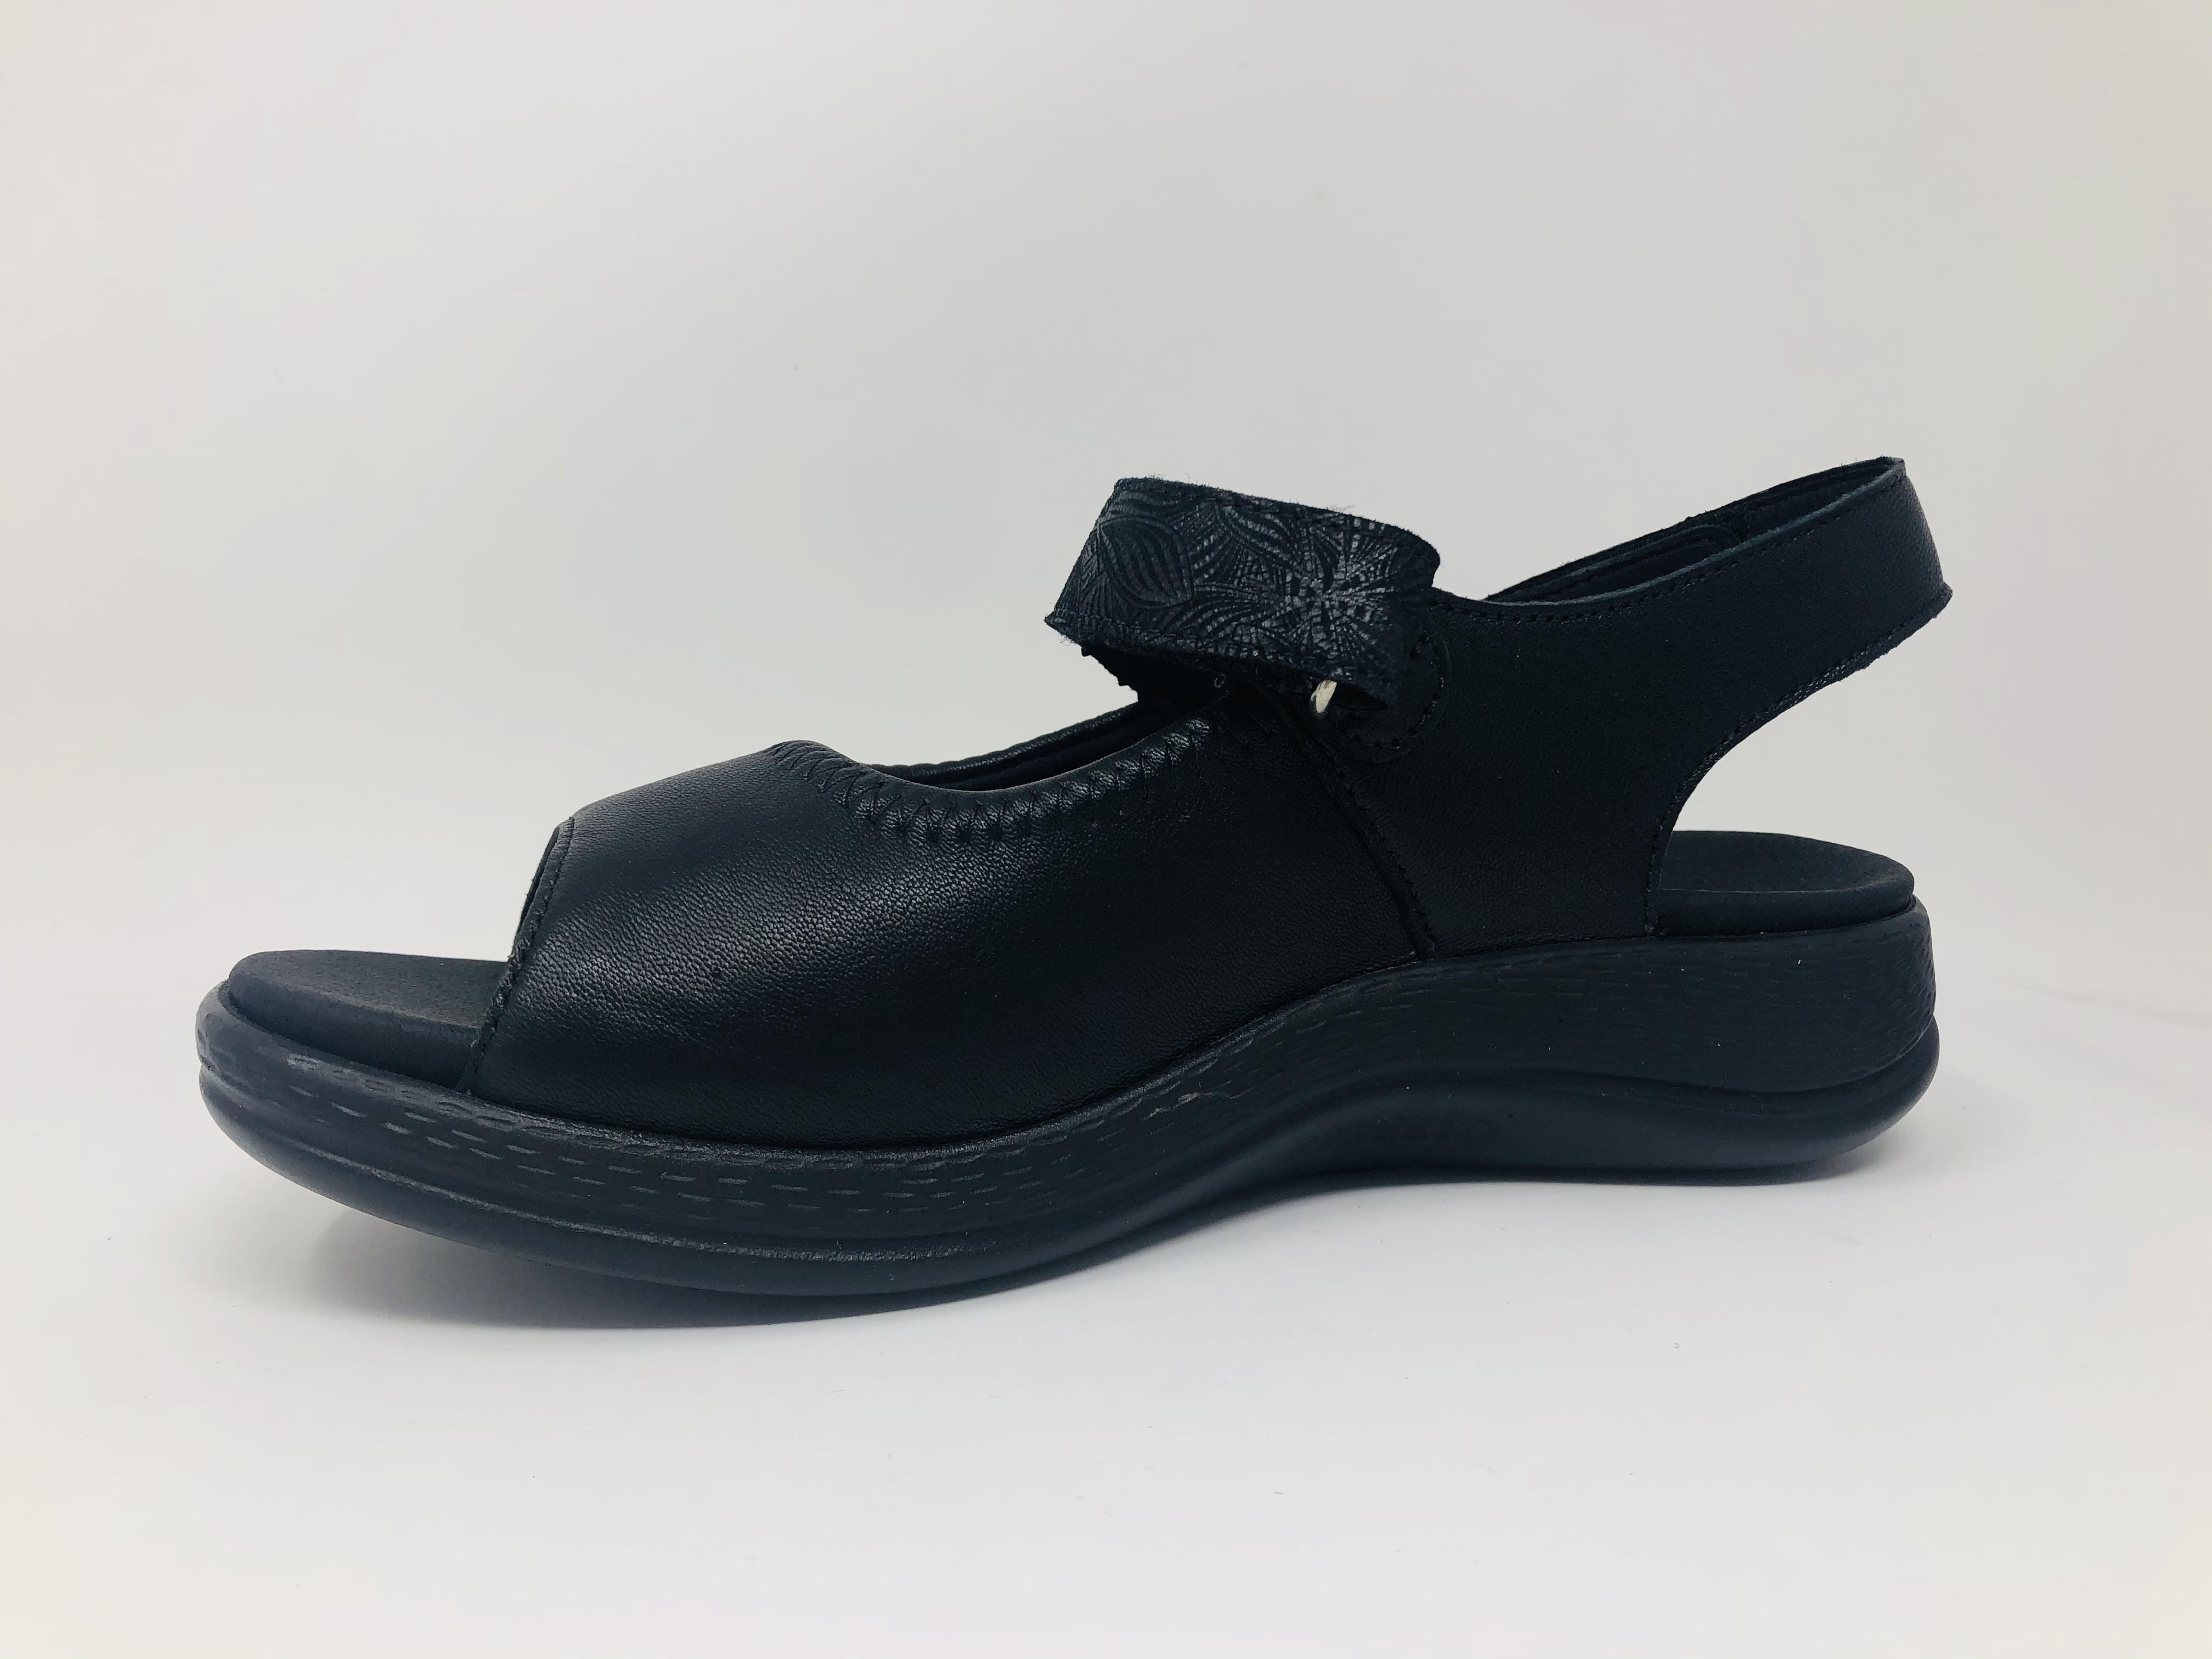 Softline by Fidelio Women's Hallux Hi Dynamic Sandal Black Size 37 M EU 